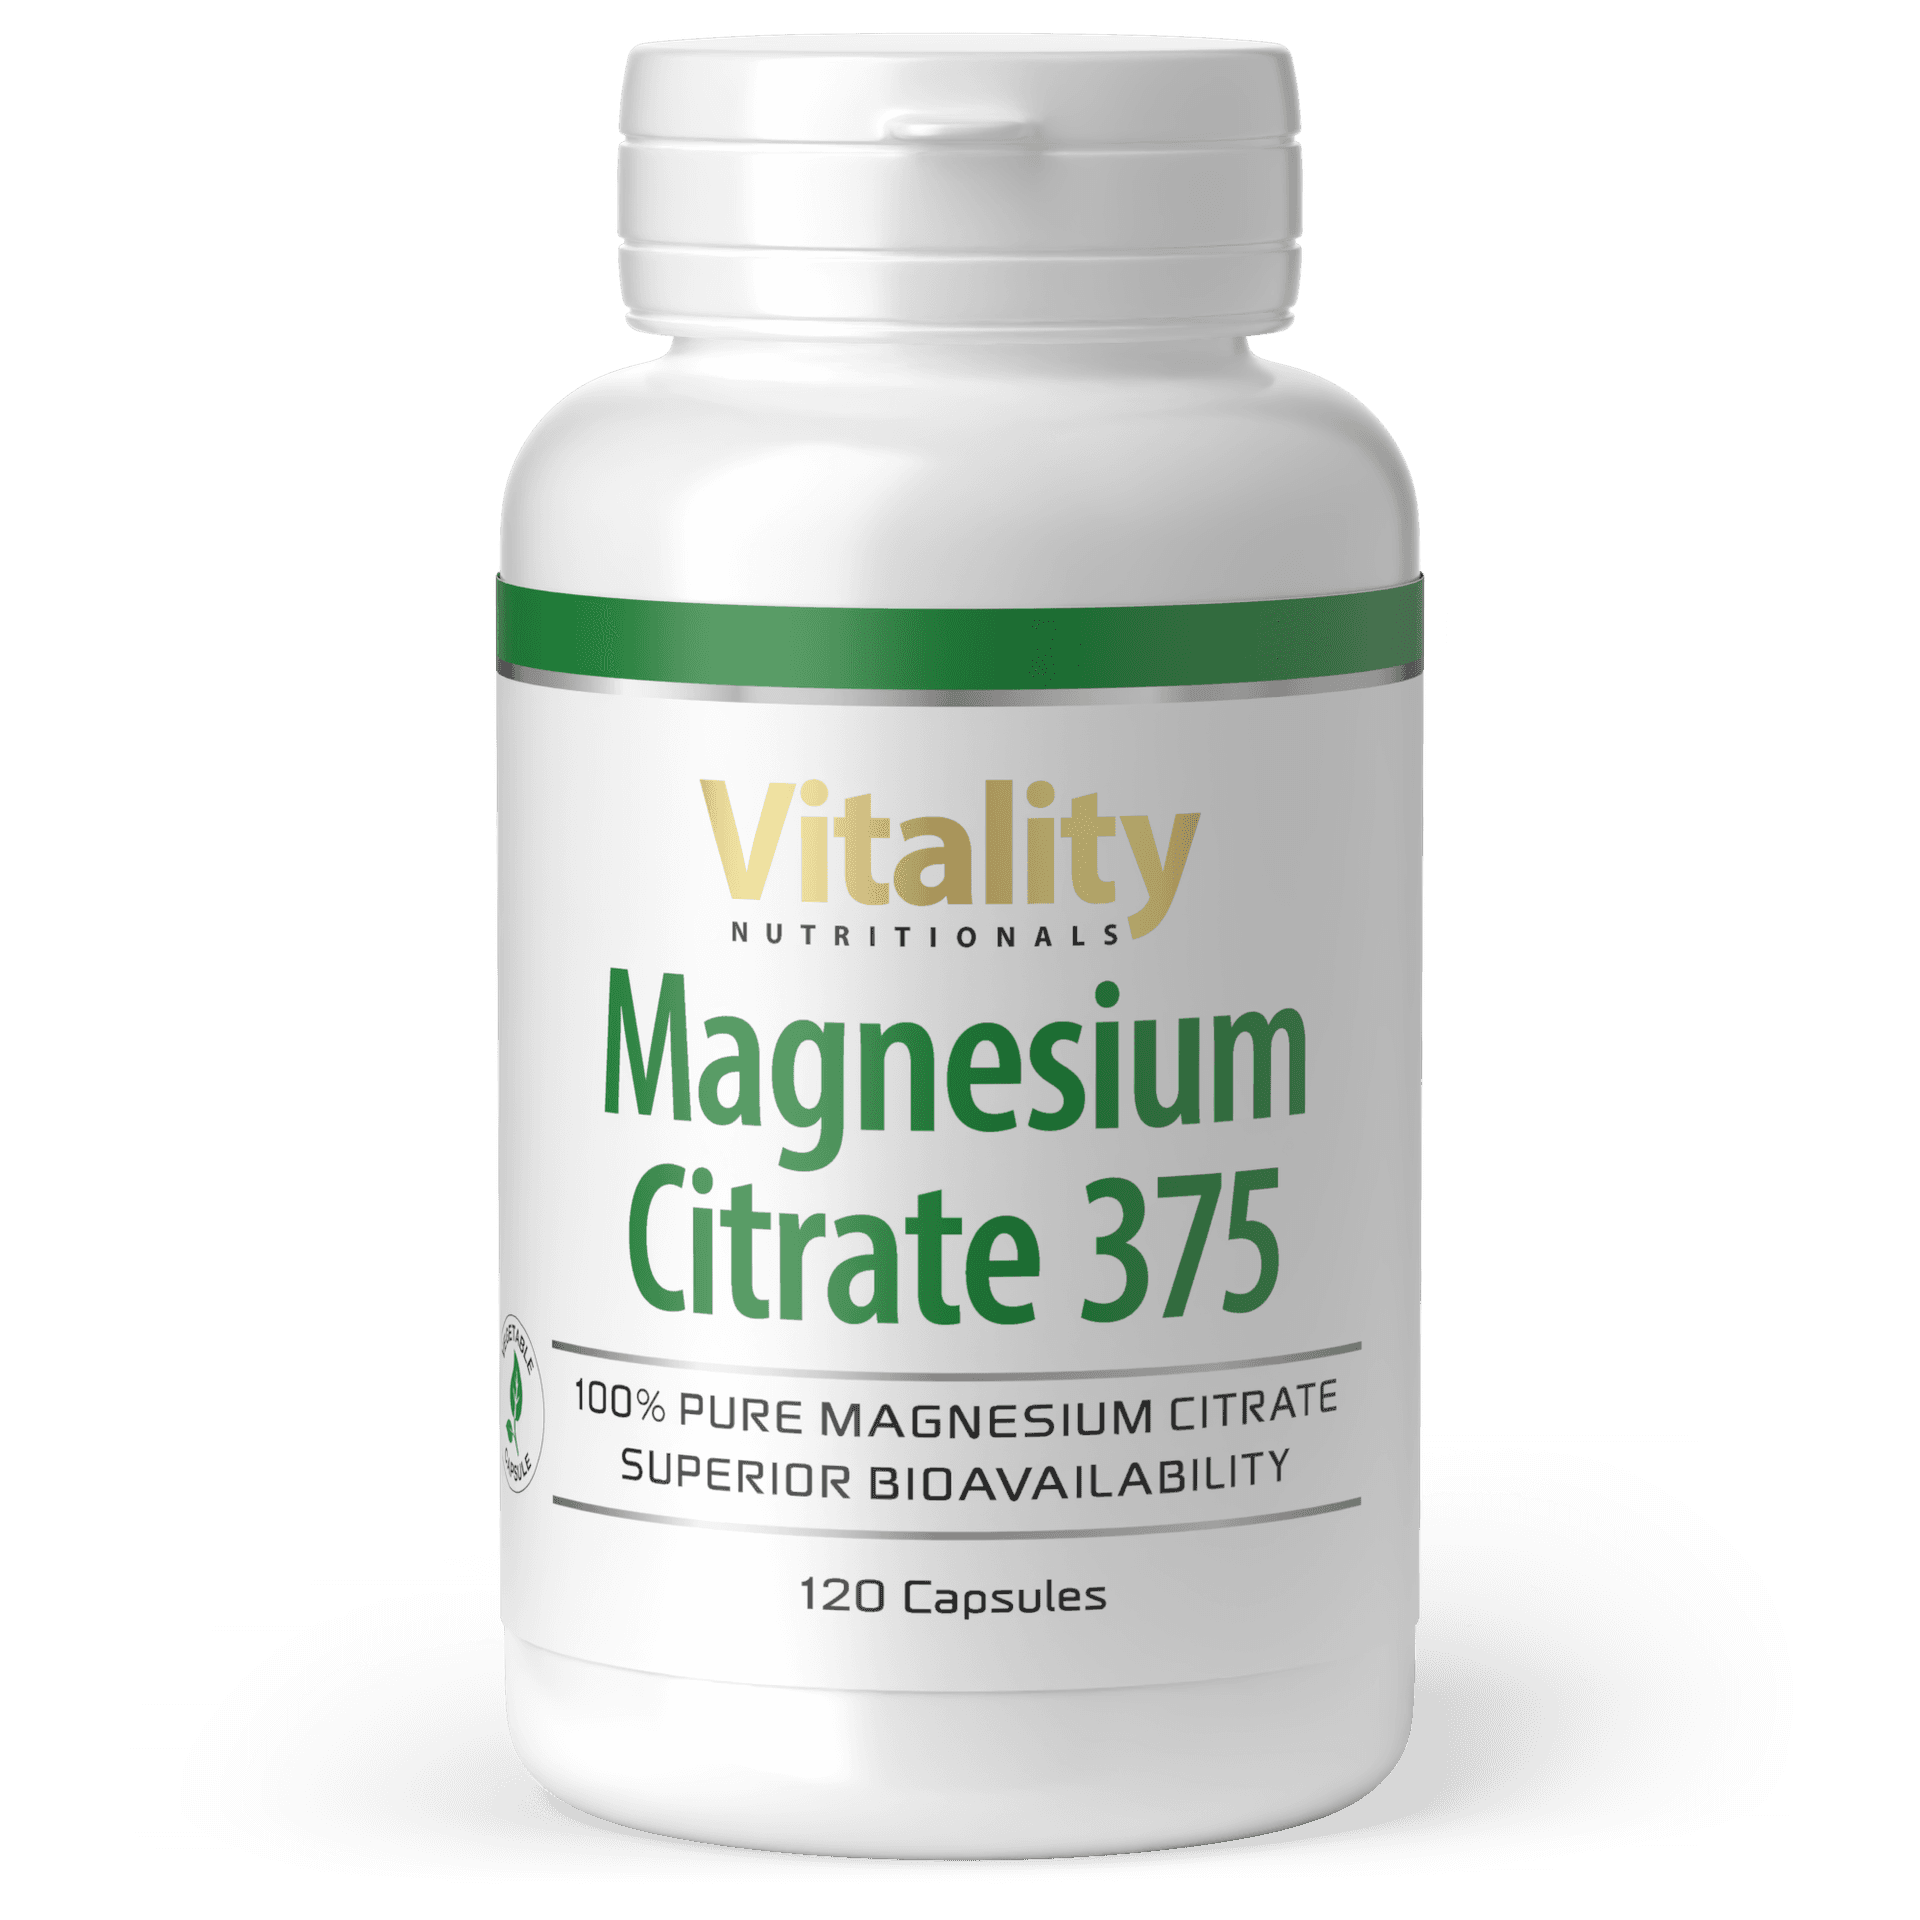 Magnesium Citrate 375 capsules